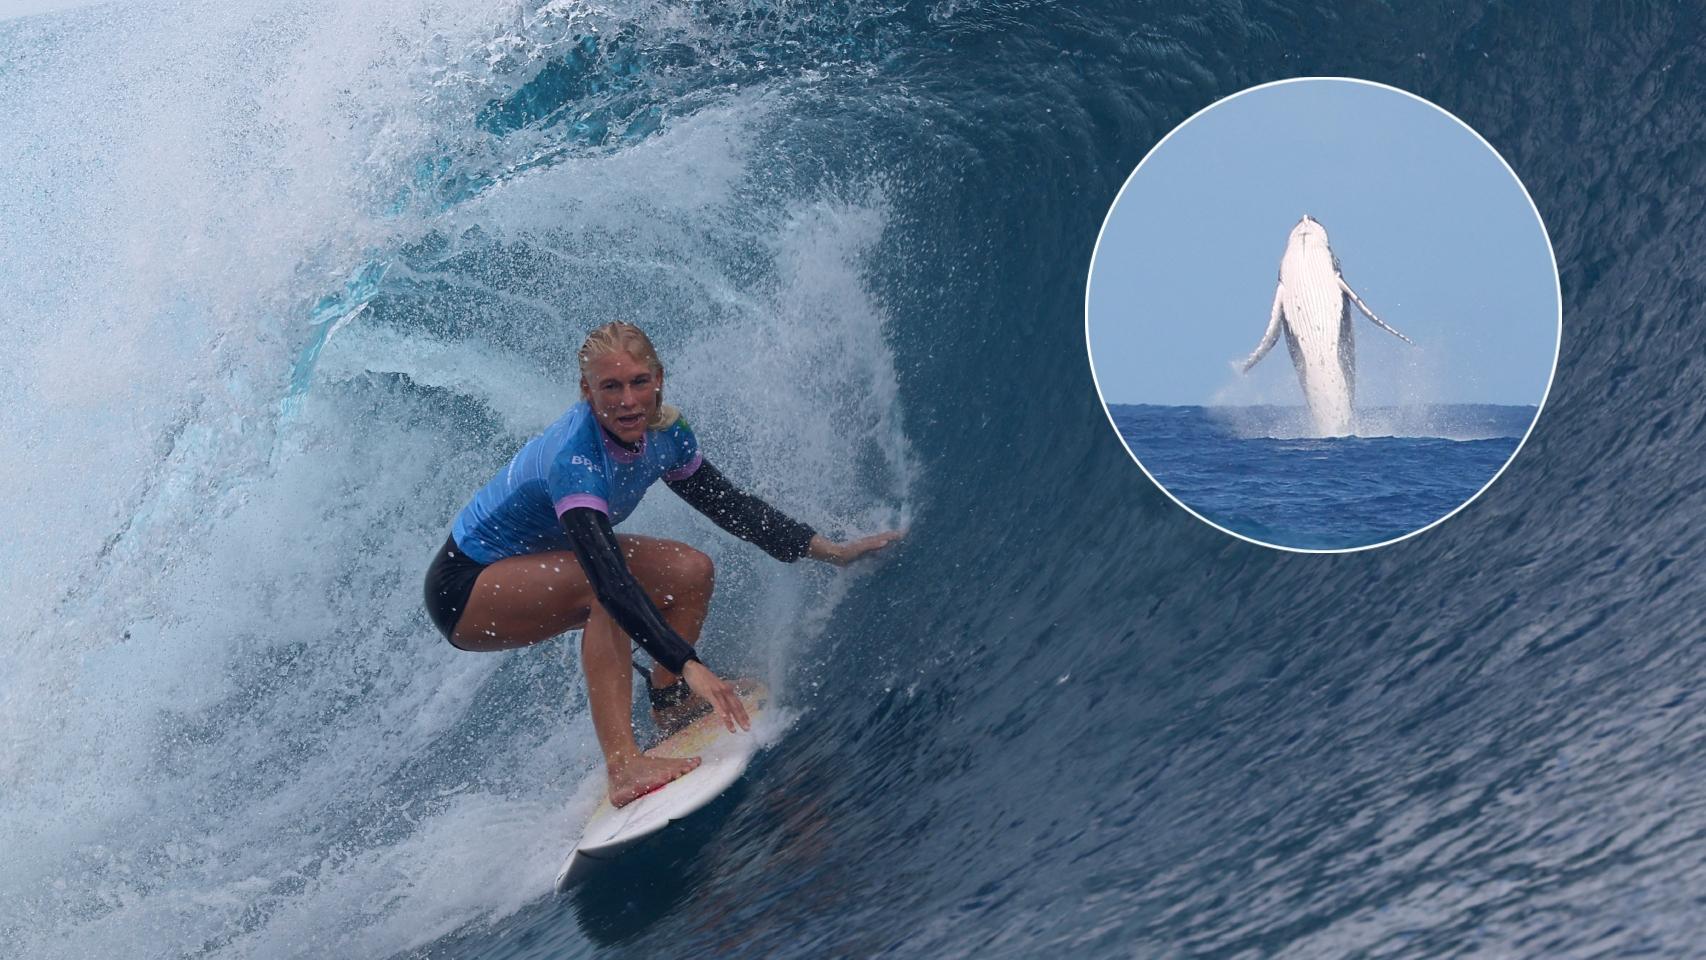 La surfista brasileña Tatiana Weston-Webb junto a una ballena que se ha colado en la competición.